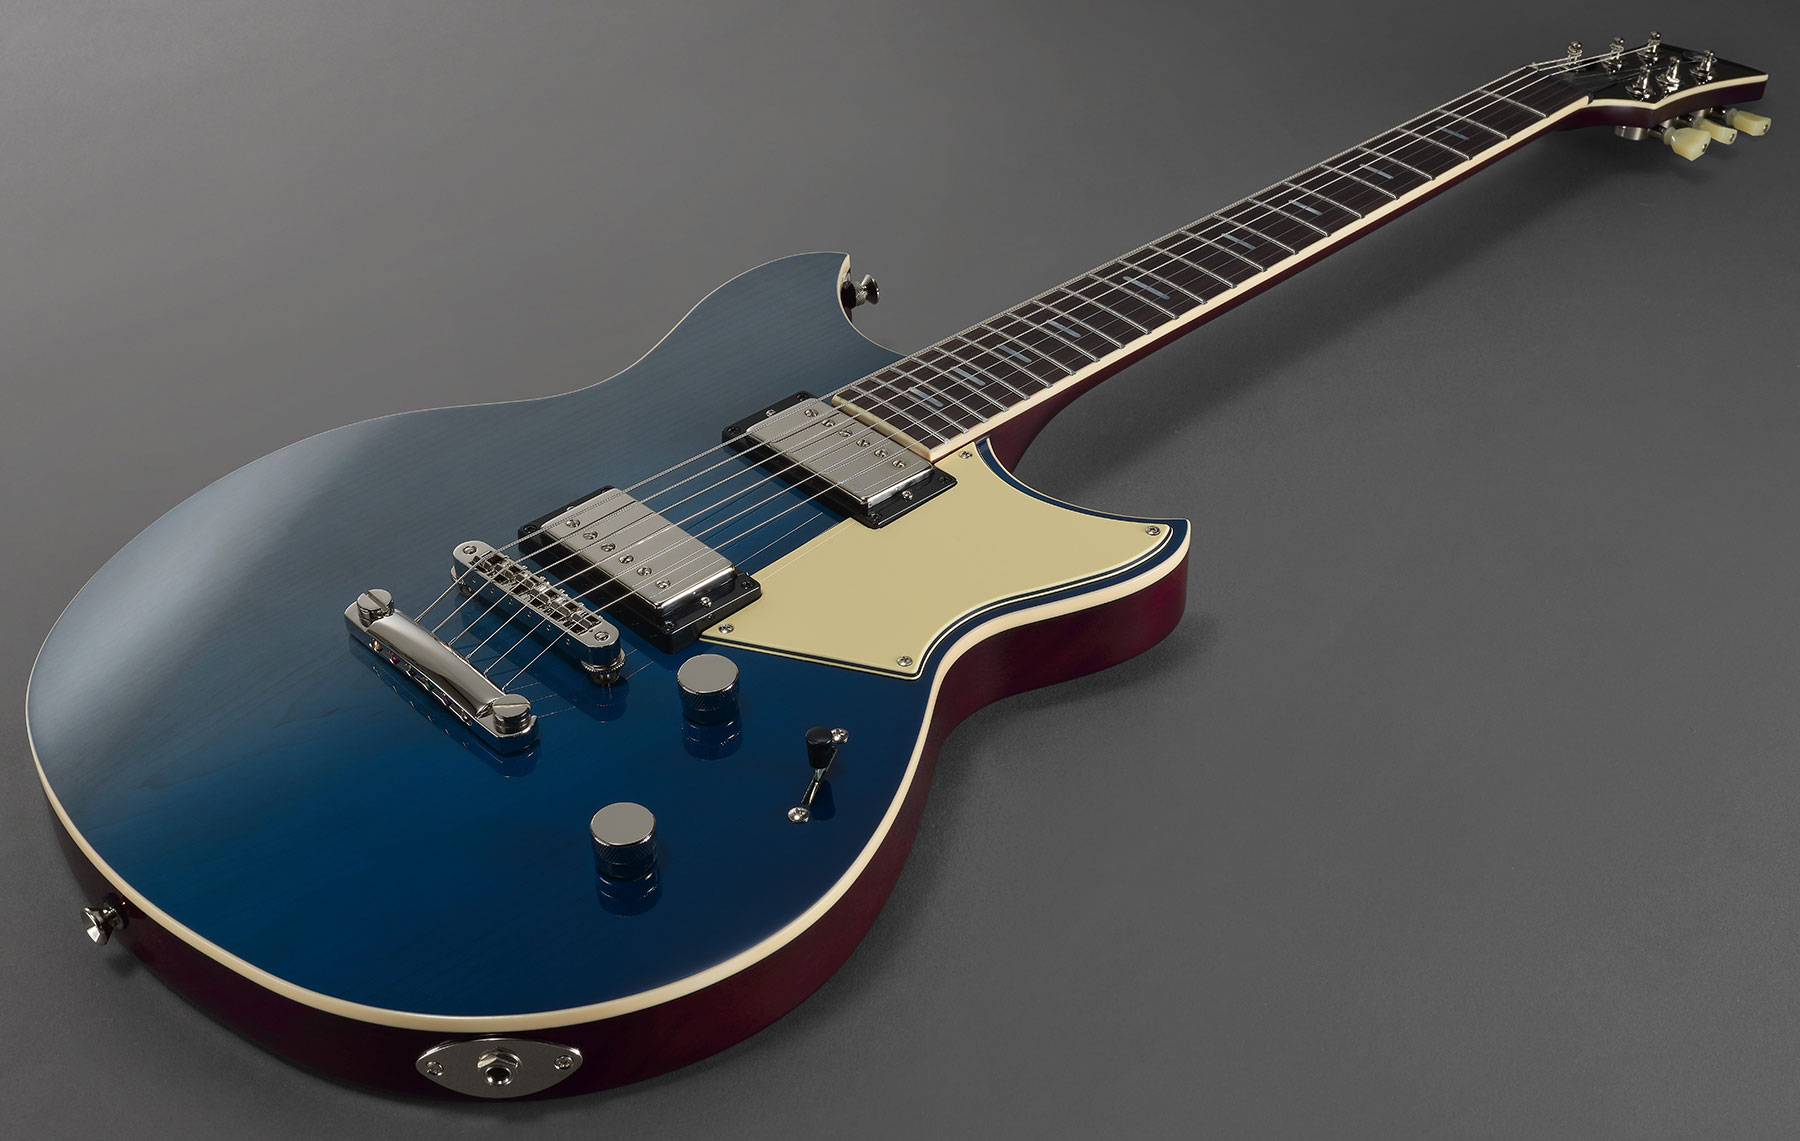 Yamaha Rsp20 Revstar Professionnal Jap Hh Ht Rw - Moonlight Blue - Guitarra eléctrica de doble corte. - Variation 3